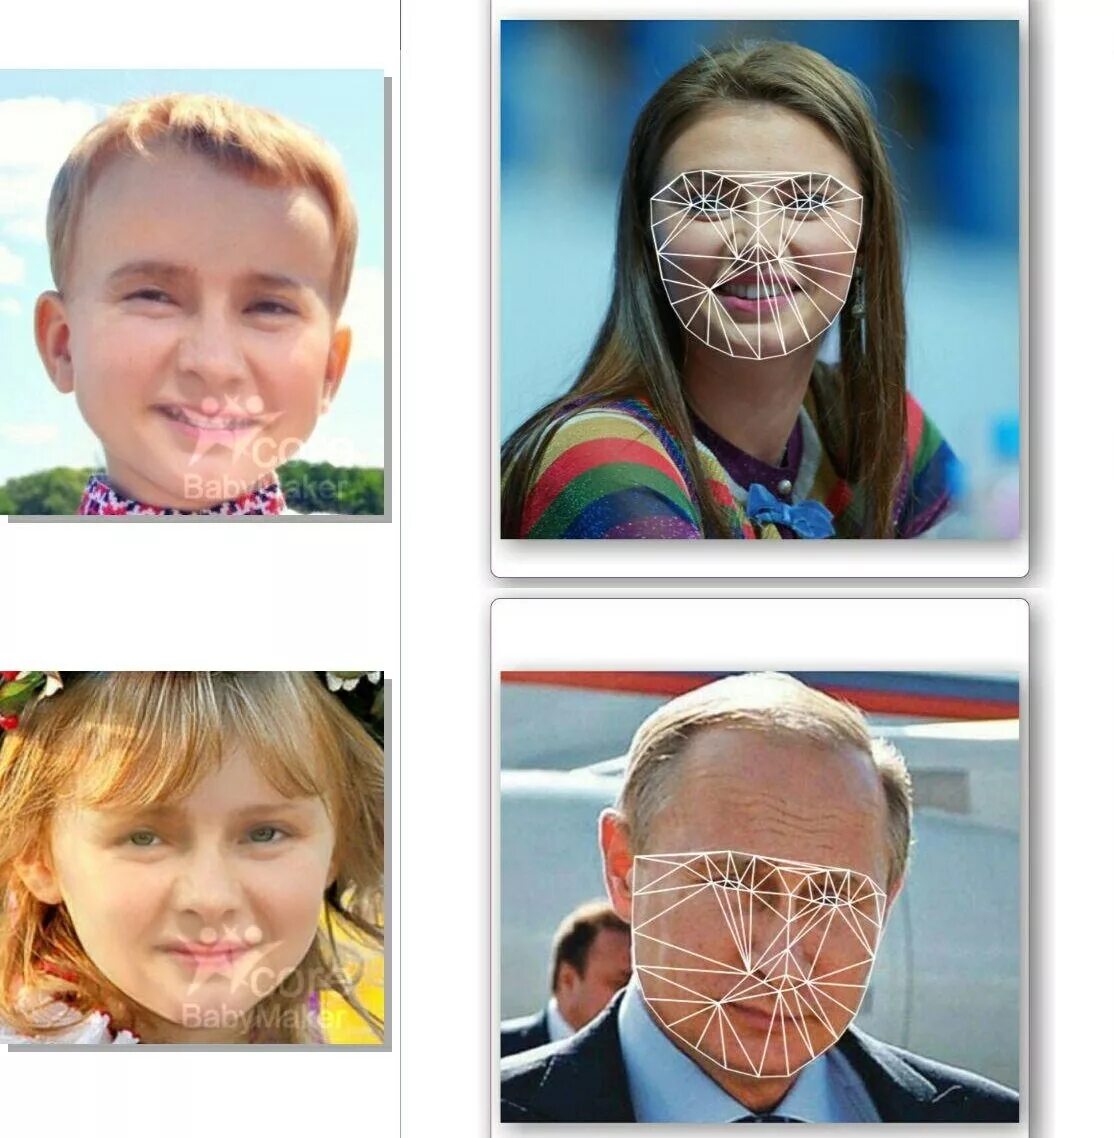 Сын Кабаевой 2022. Кабаева с детьми 2022. Как будет выглядеть ребенок. Сын Алины Кабаевой сейчас 2022. Как будут выглядеть наши дети по фото